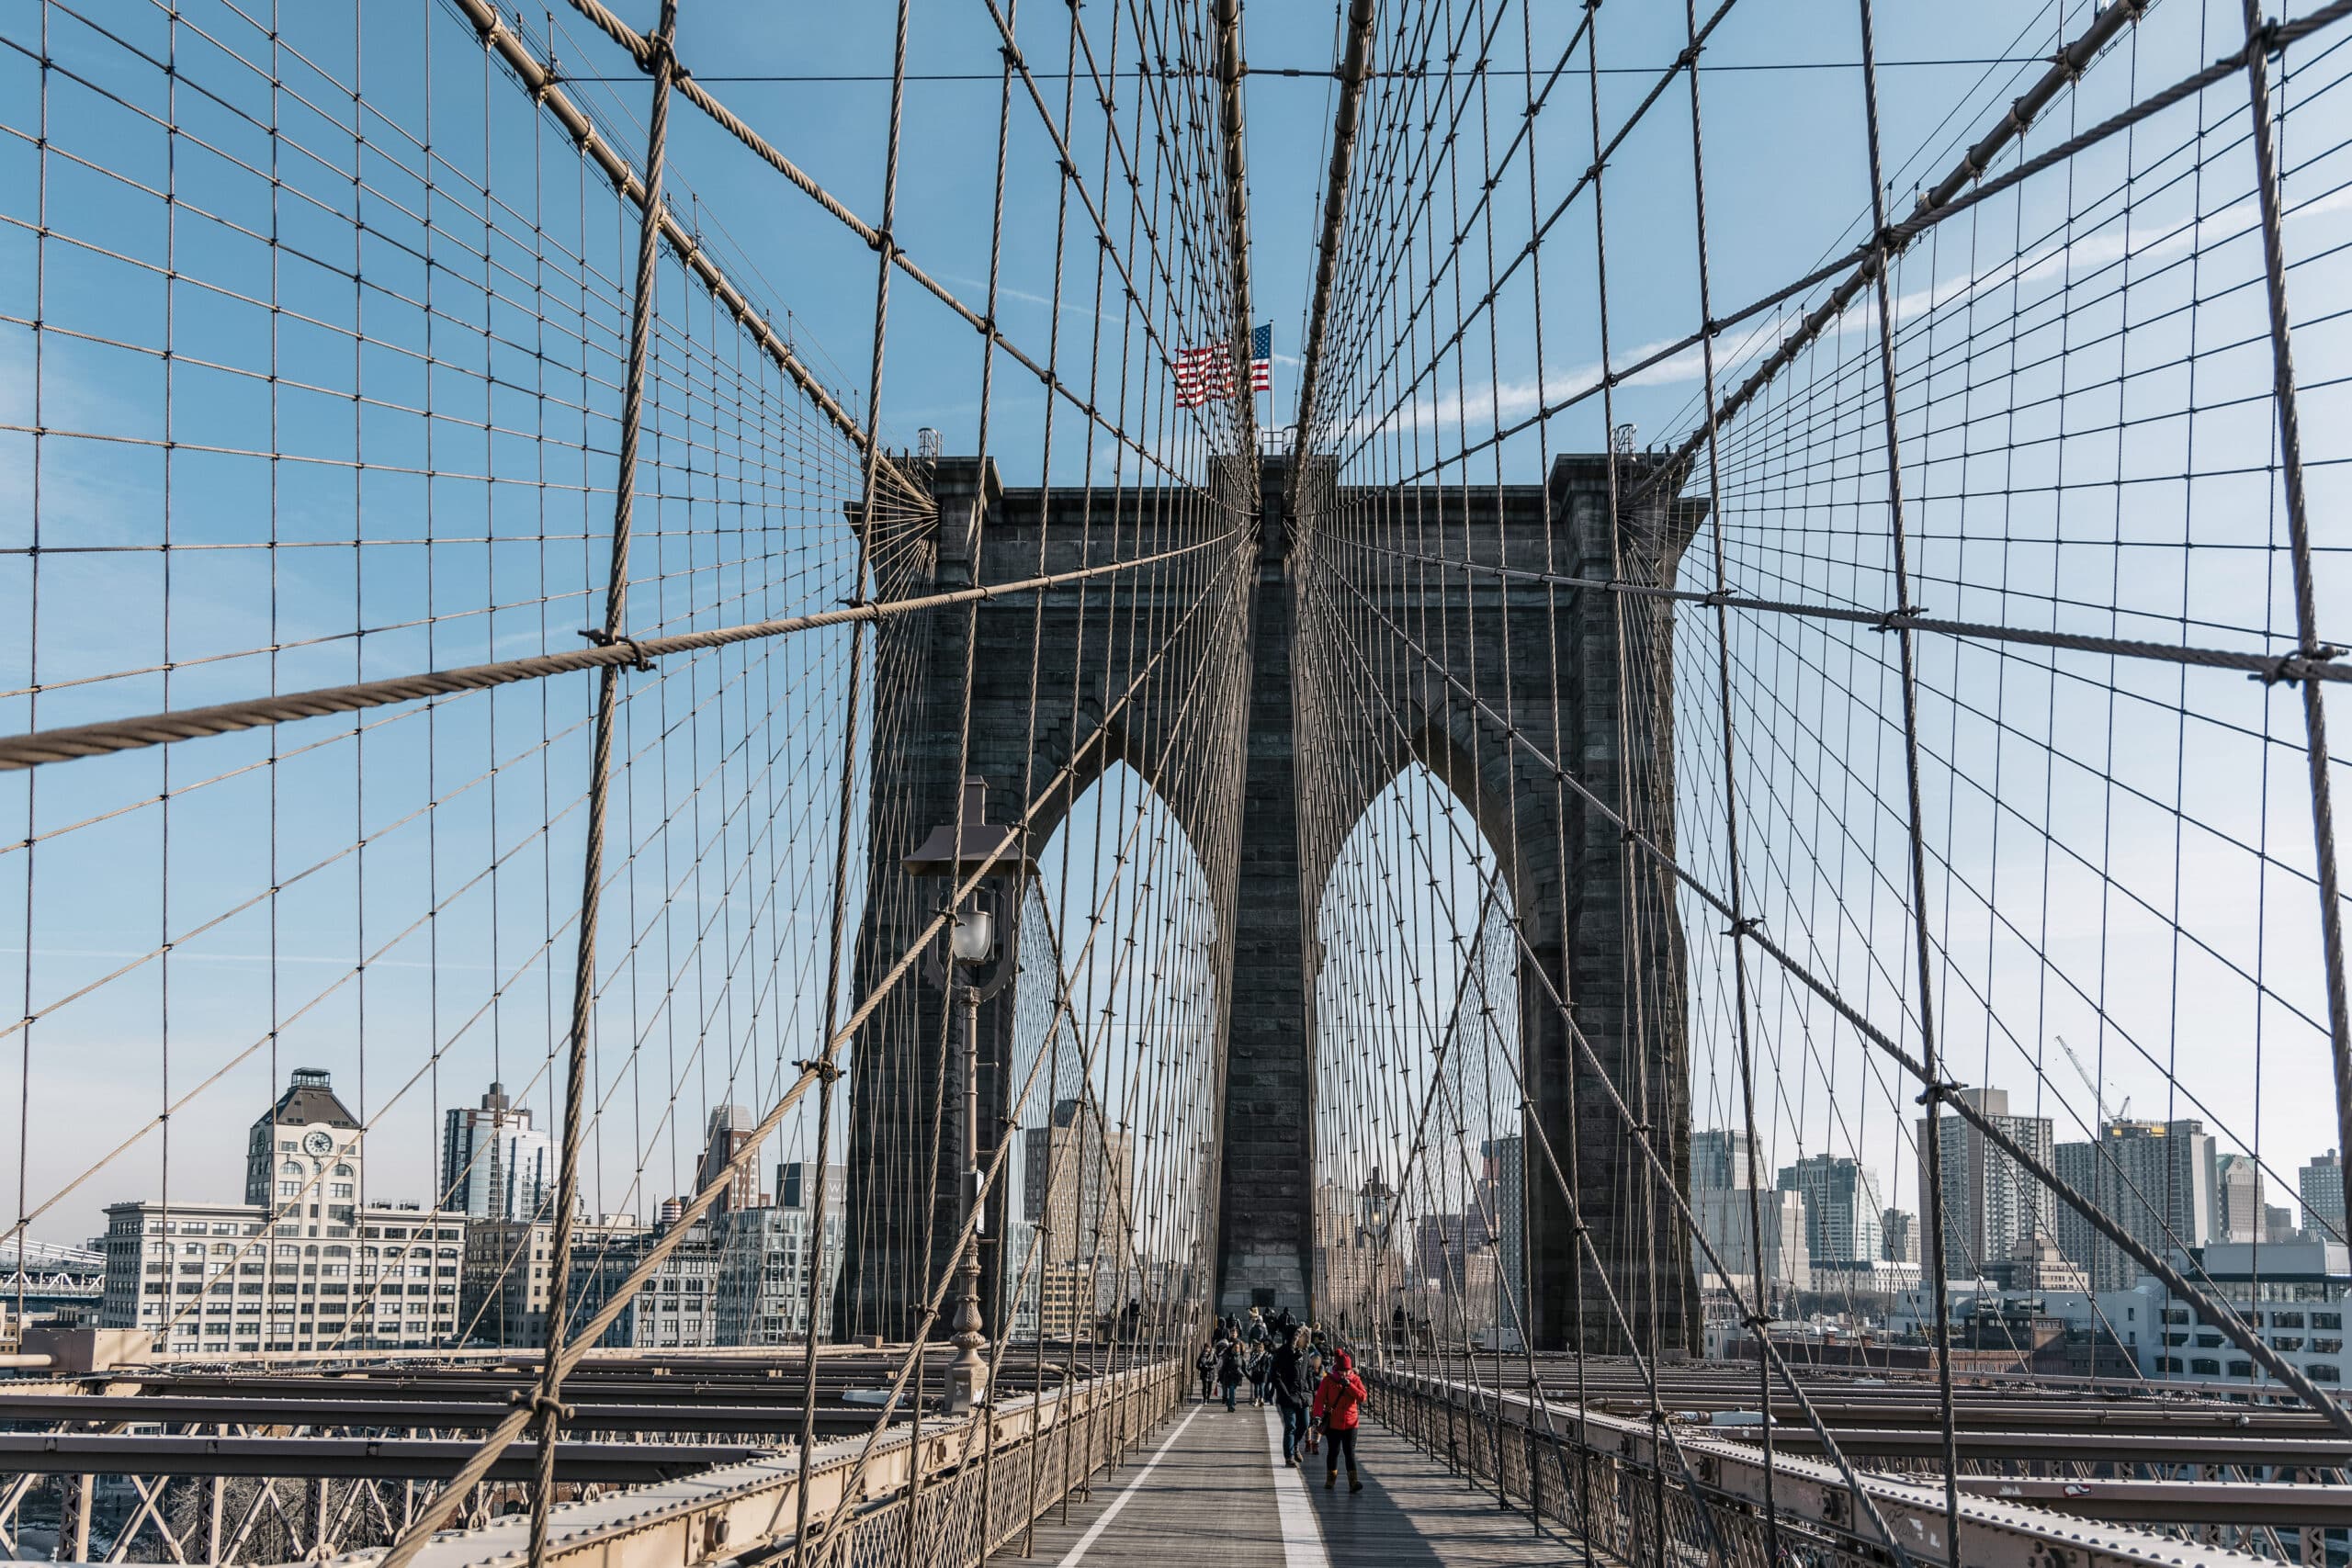 Blick auf die Brooklyn Bridge mit Fußgängern und Radfahrern, mit den ikonischen gotischen Bögen und Kabeldrähten, mit der Skyline von New York im Hintergrund unter einem klaren blauen Himmel. © Fotografie Tomas Rodriguez